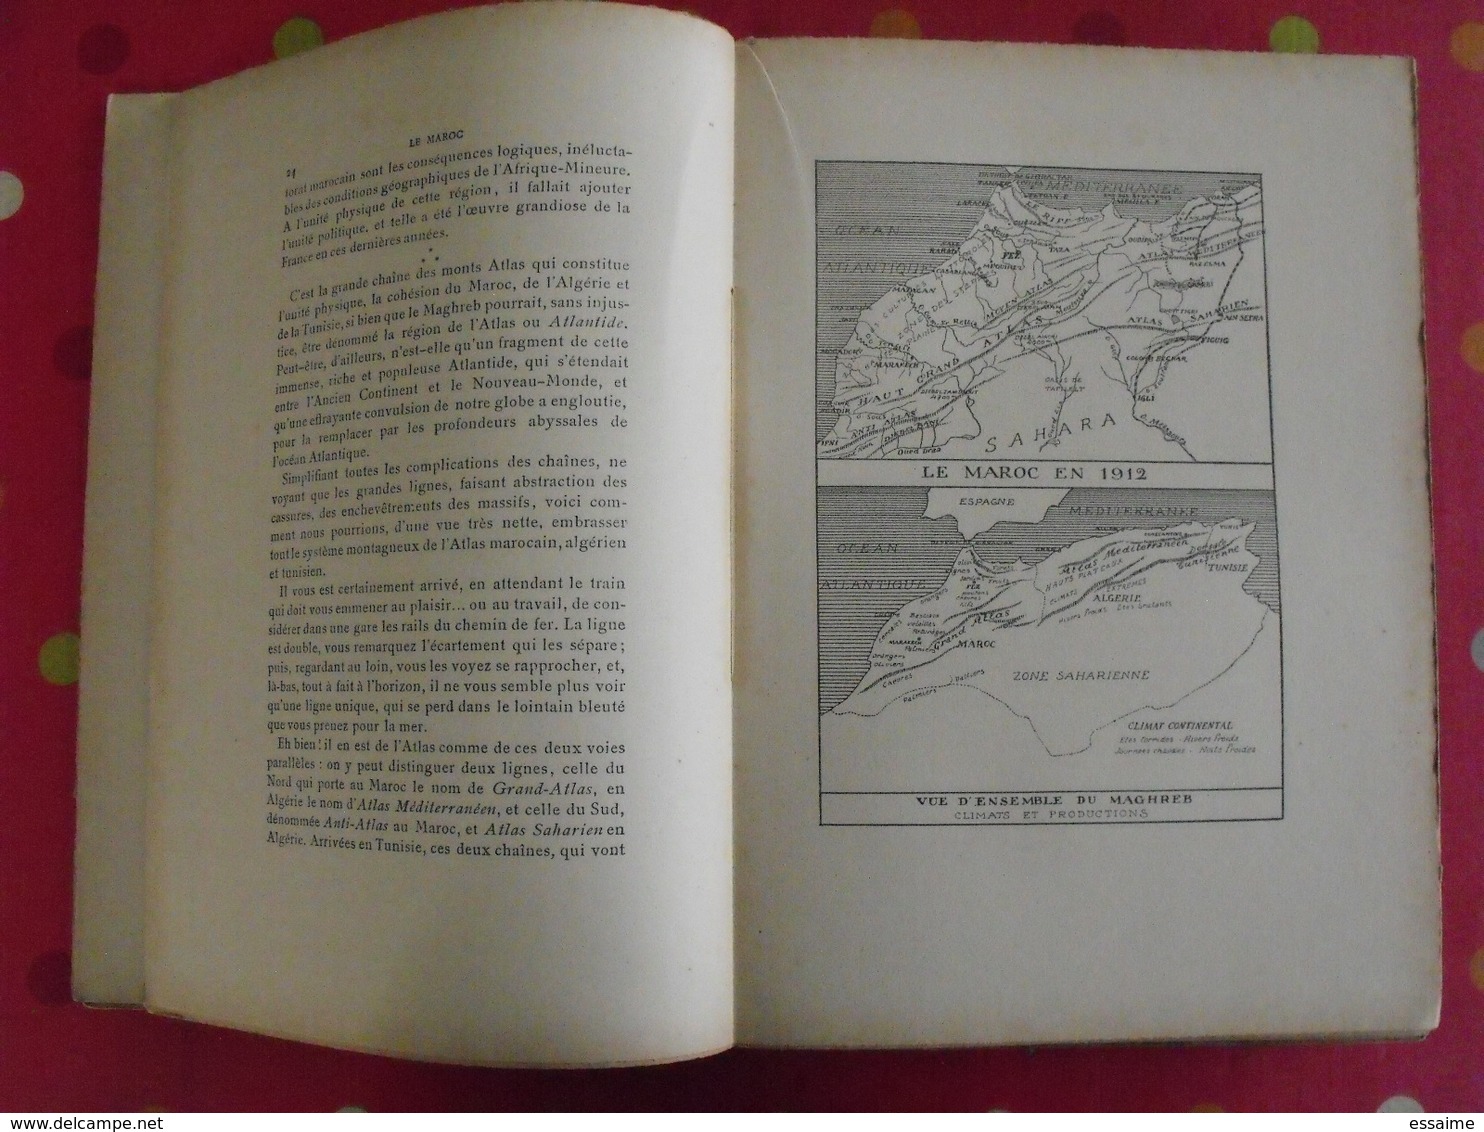 Le Maroc, Un Empire Qui Se Réveille Par Gabriel Galland. Librairie Nationale D'éducation Et De Récréation. Sd (1912) - Unclassified